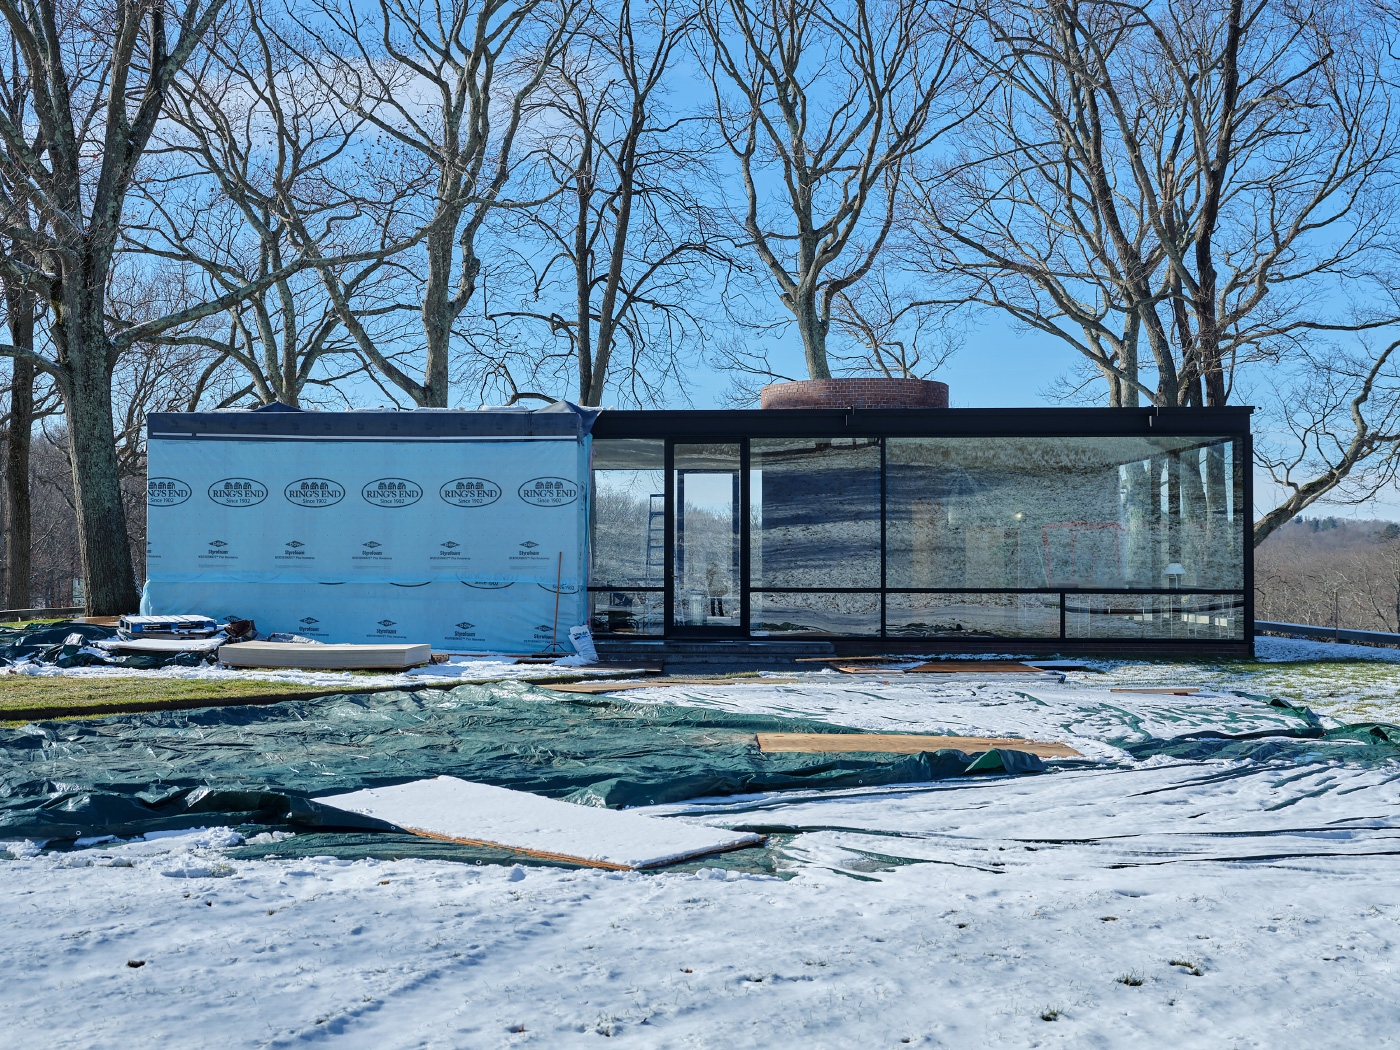 菲利普·约翰逊(Philip Johnson)玻璃屋的冬季照片，一半被防水布覆盖